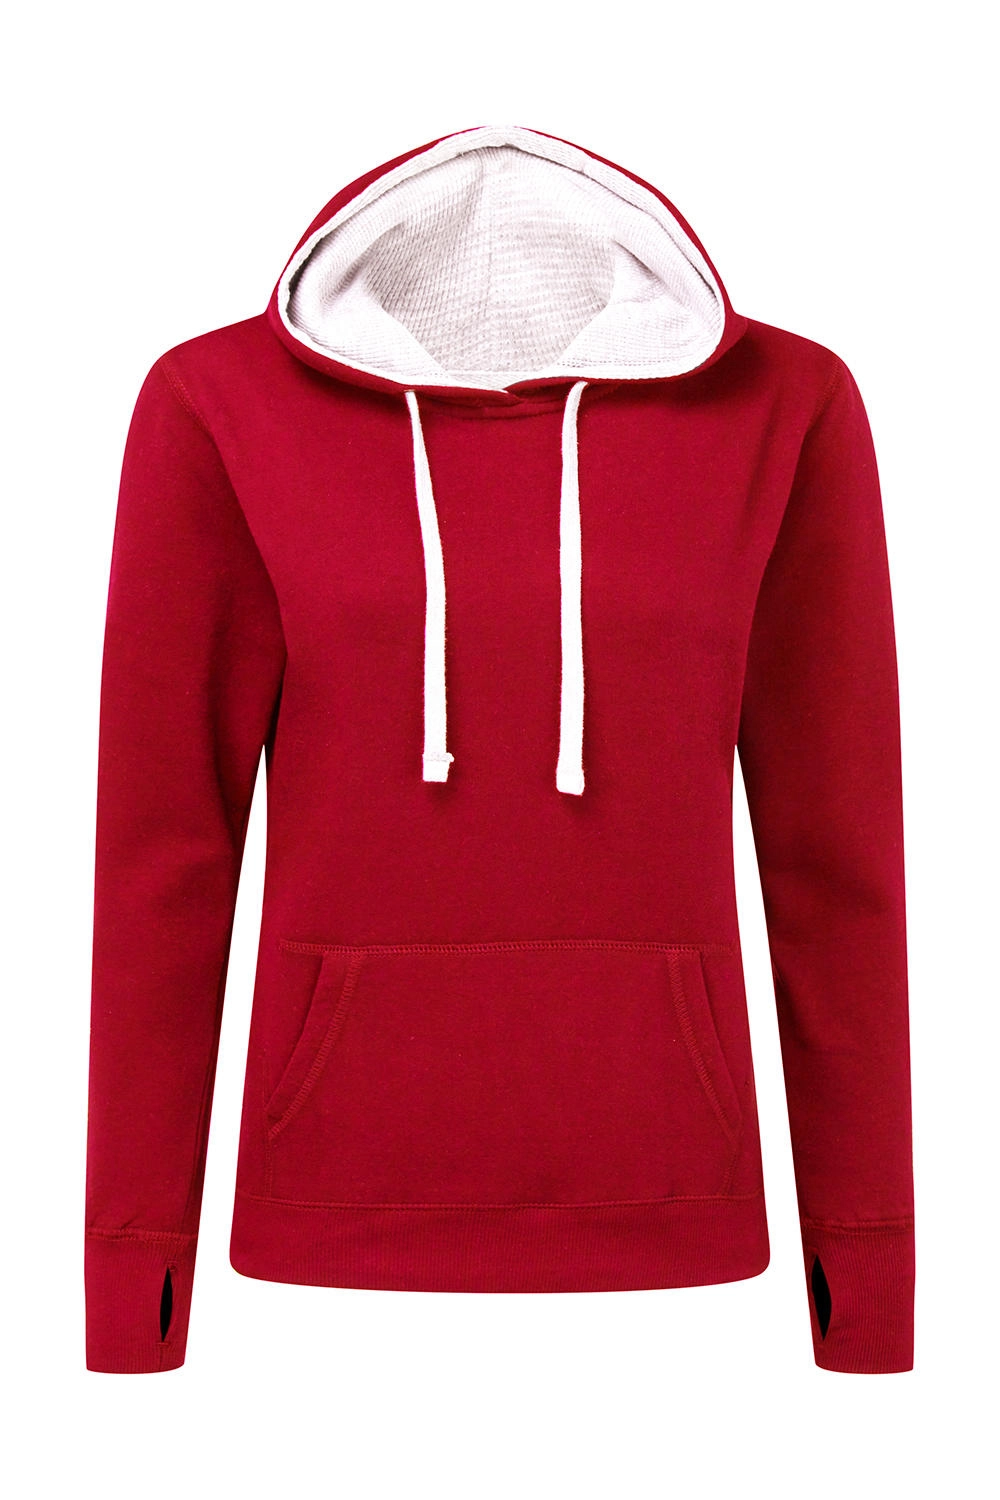 Contrast Hooded Sweatshirt Women zum Besticken und Bedrucken in der Farbe Red/White mit Ihren Logo, Schriftzug oder Motiv.